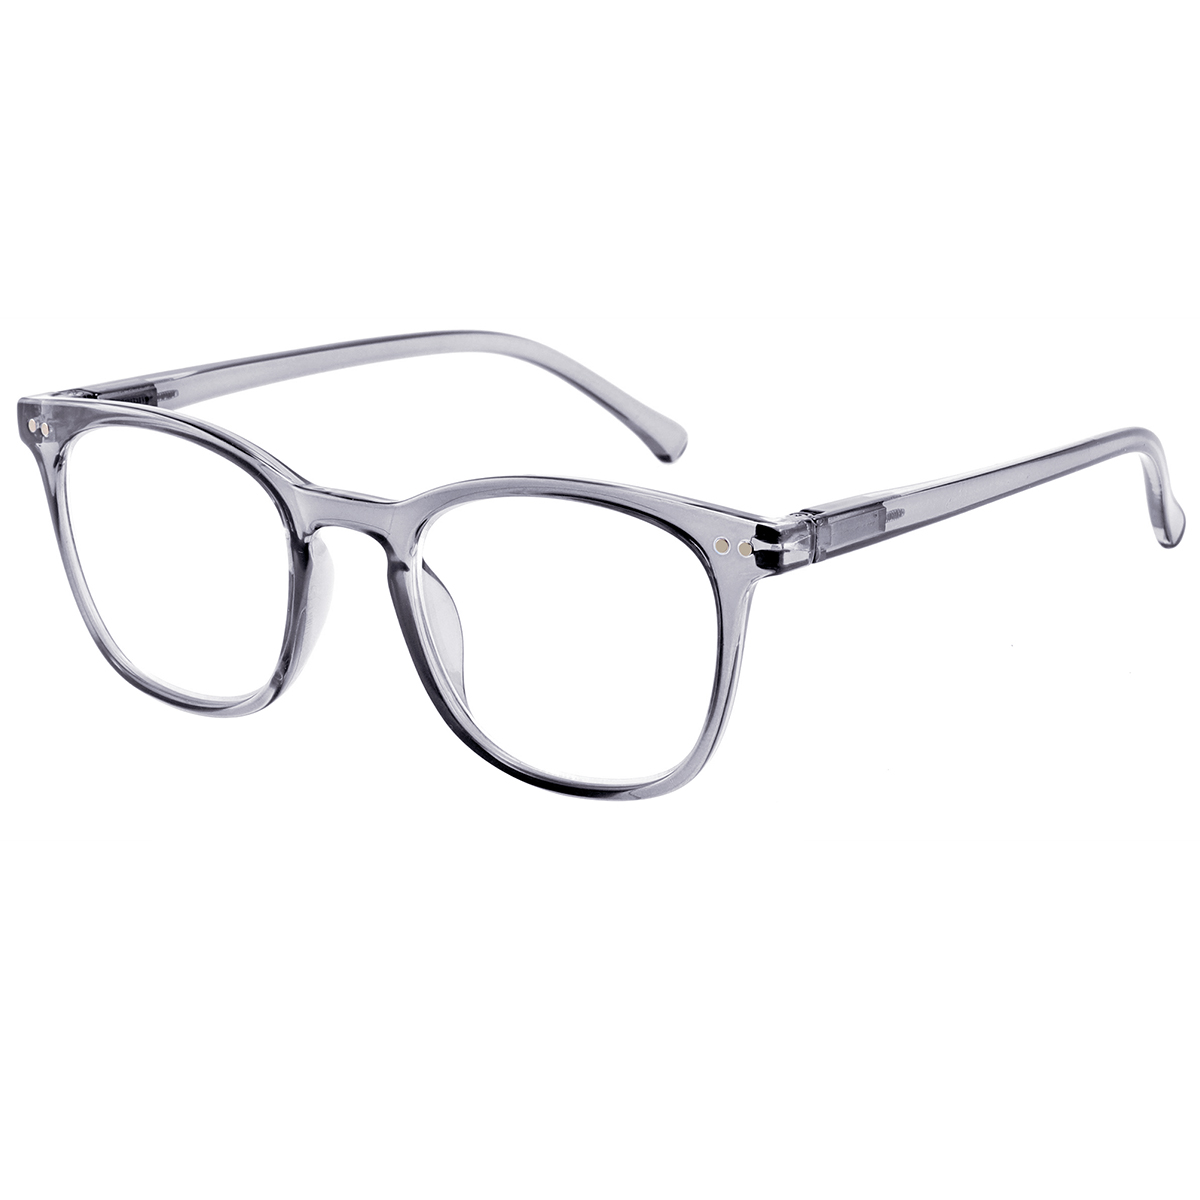 Tarentum - Square Gray Reading Glasses for Men & Women